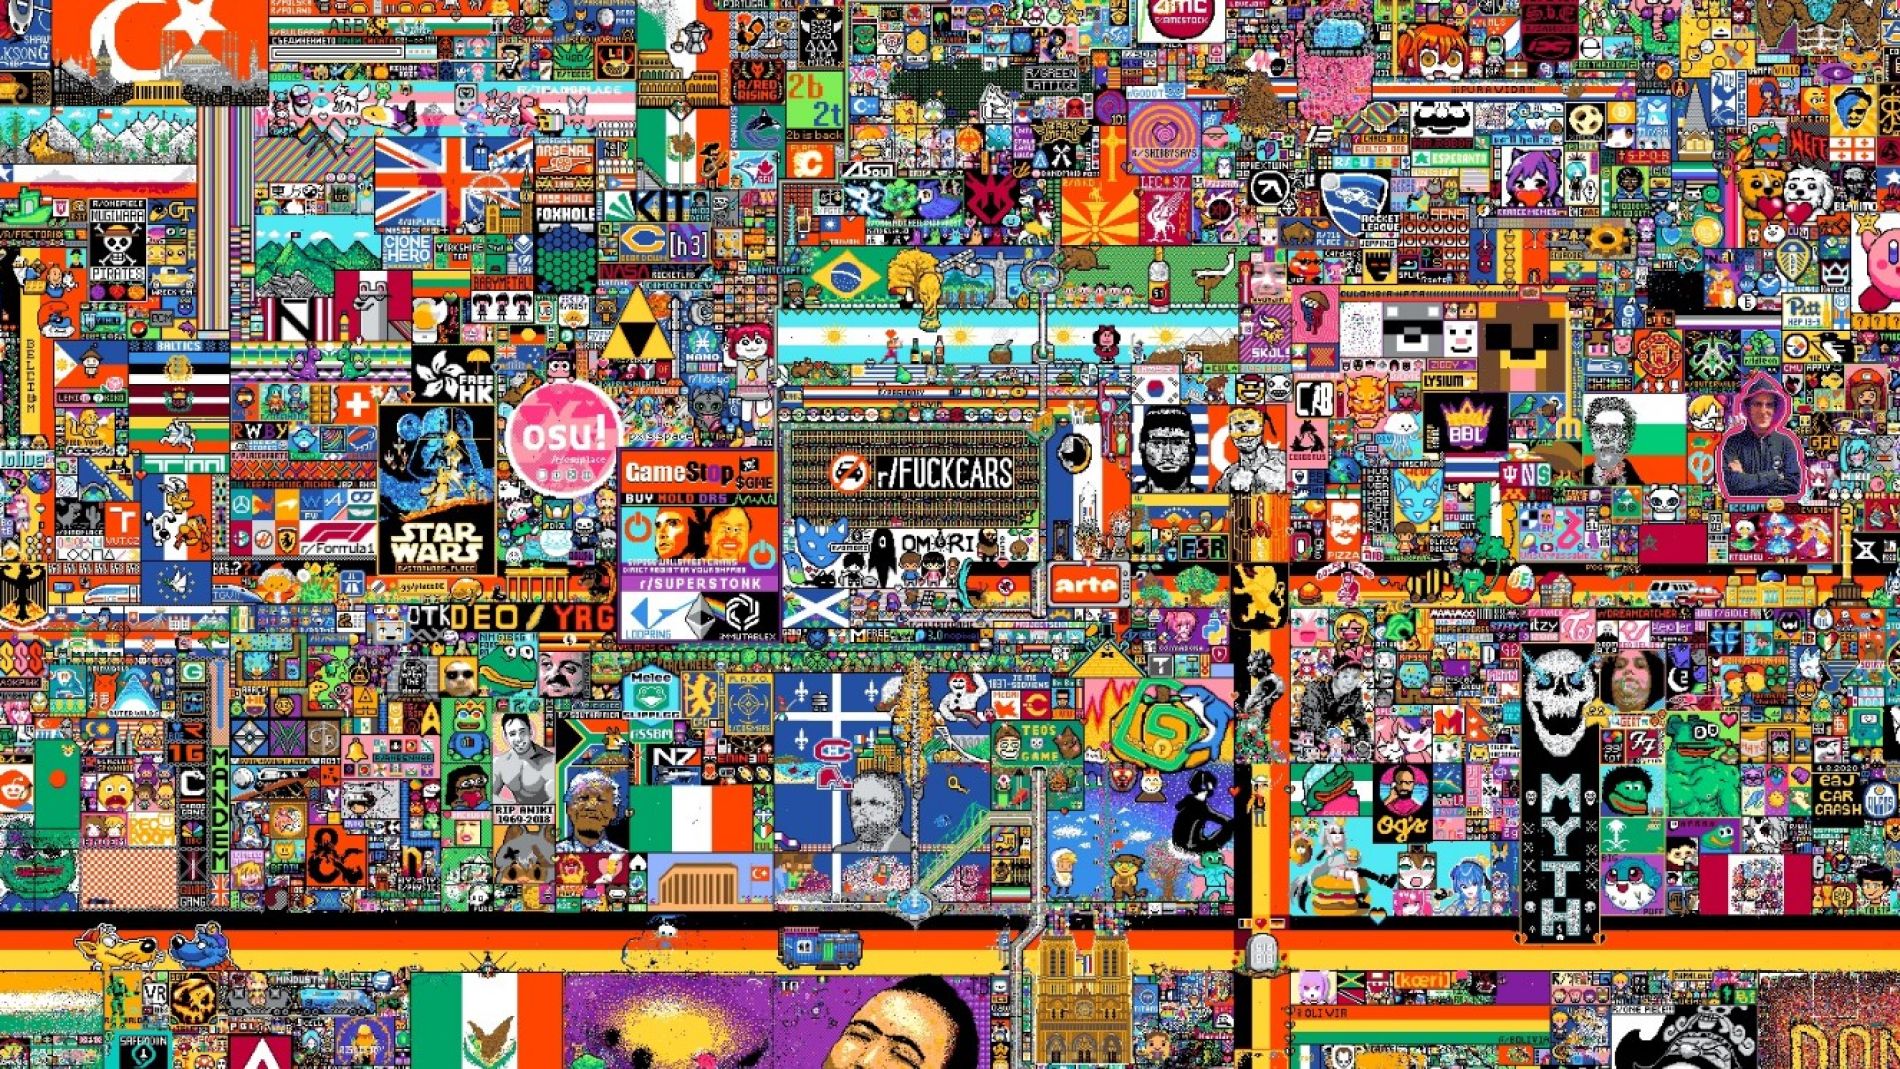 Reddit pone a todo Internet a colaborar en Place, su mural de arte comunitario